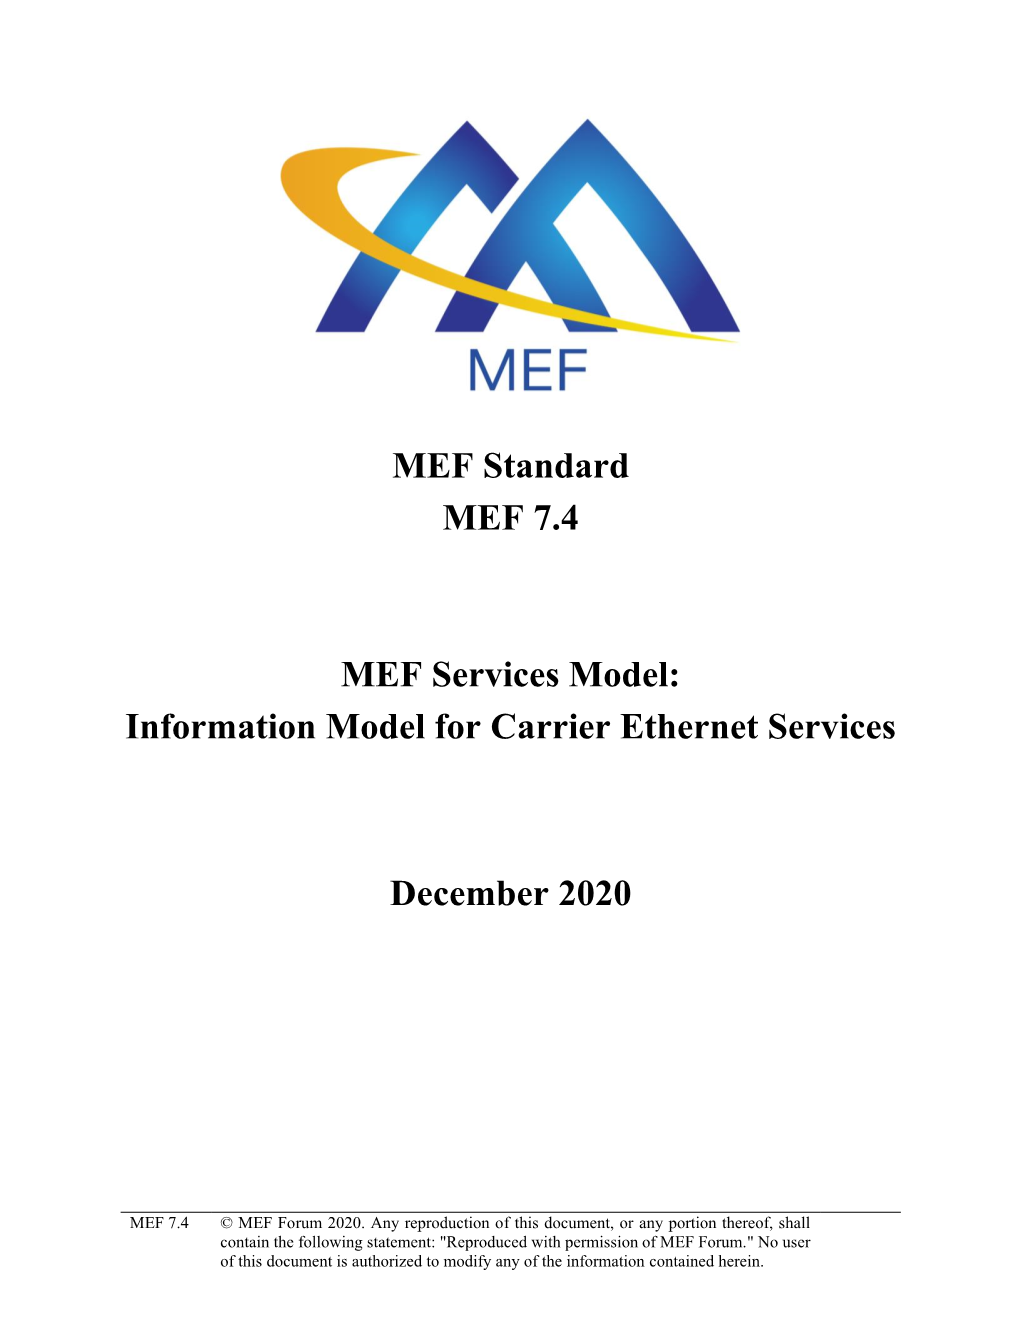 MEF Standard MEF 7.4